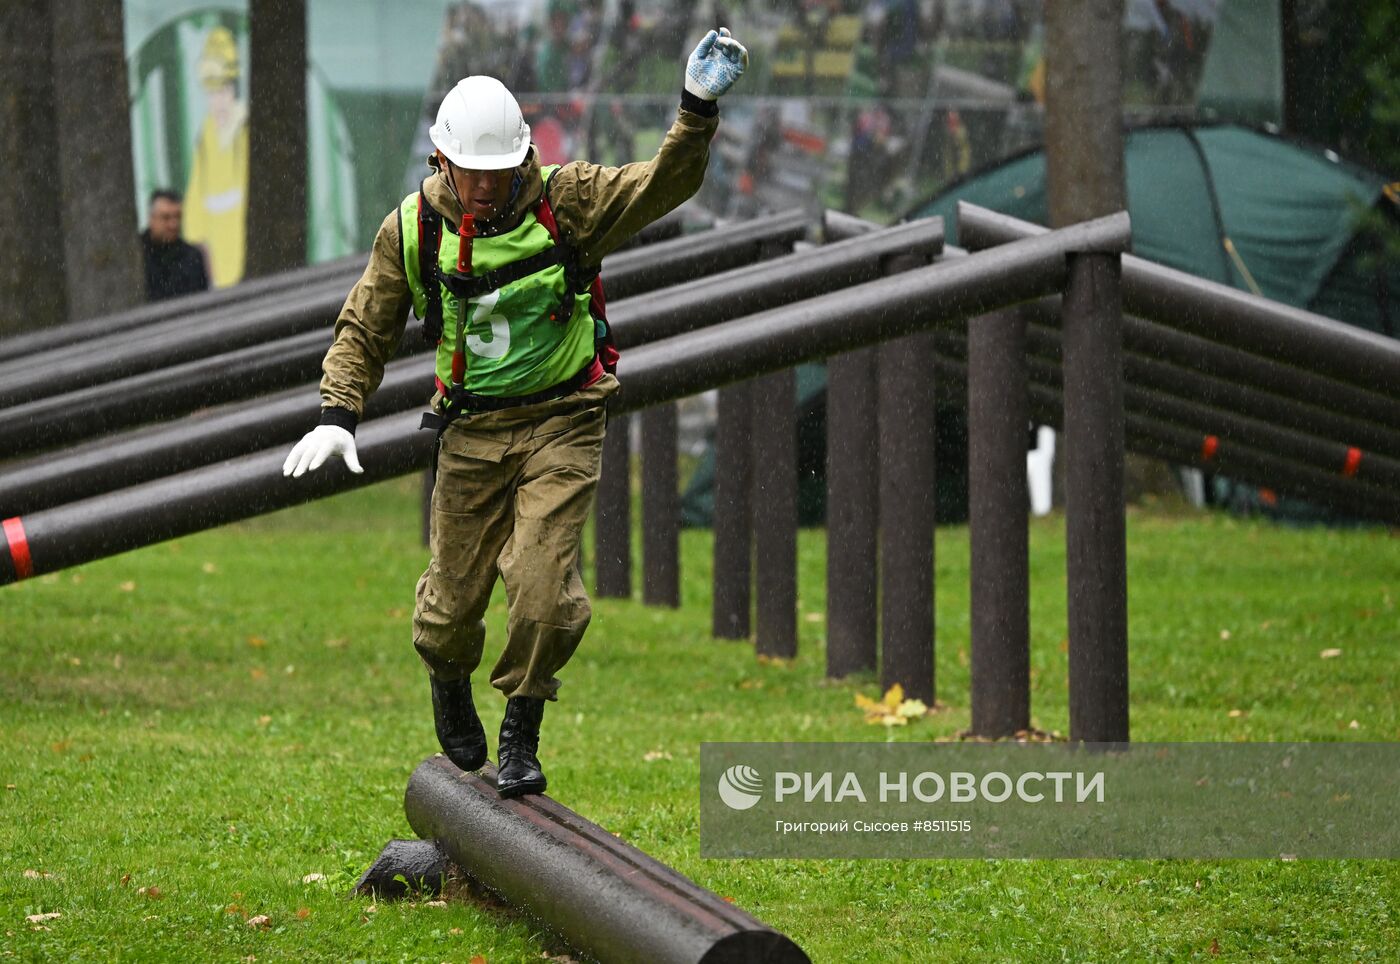 Конкурс лесных служб России и Белоруссии "Лучший лесной пожарный 2023 года"